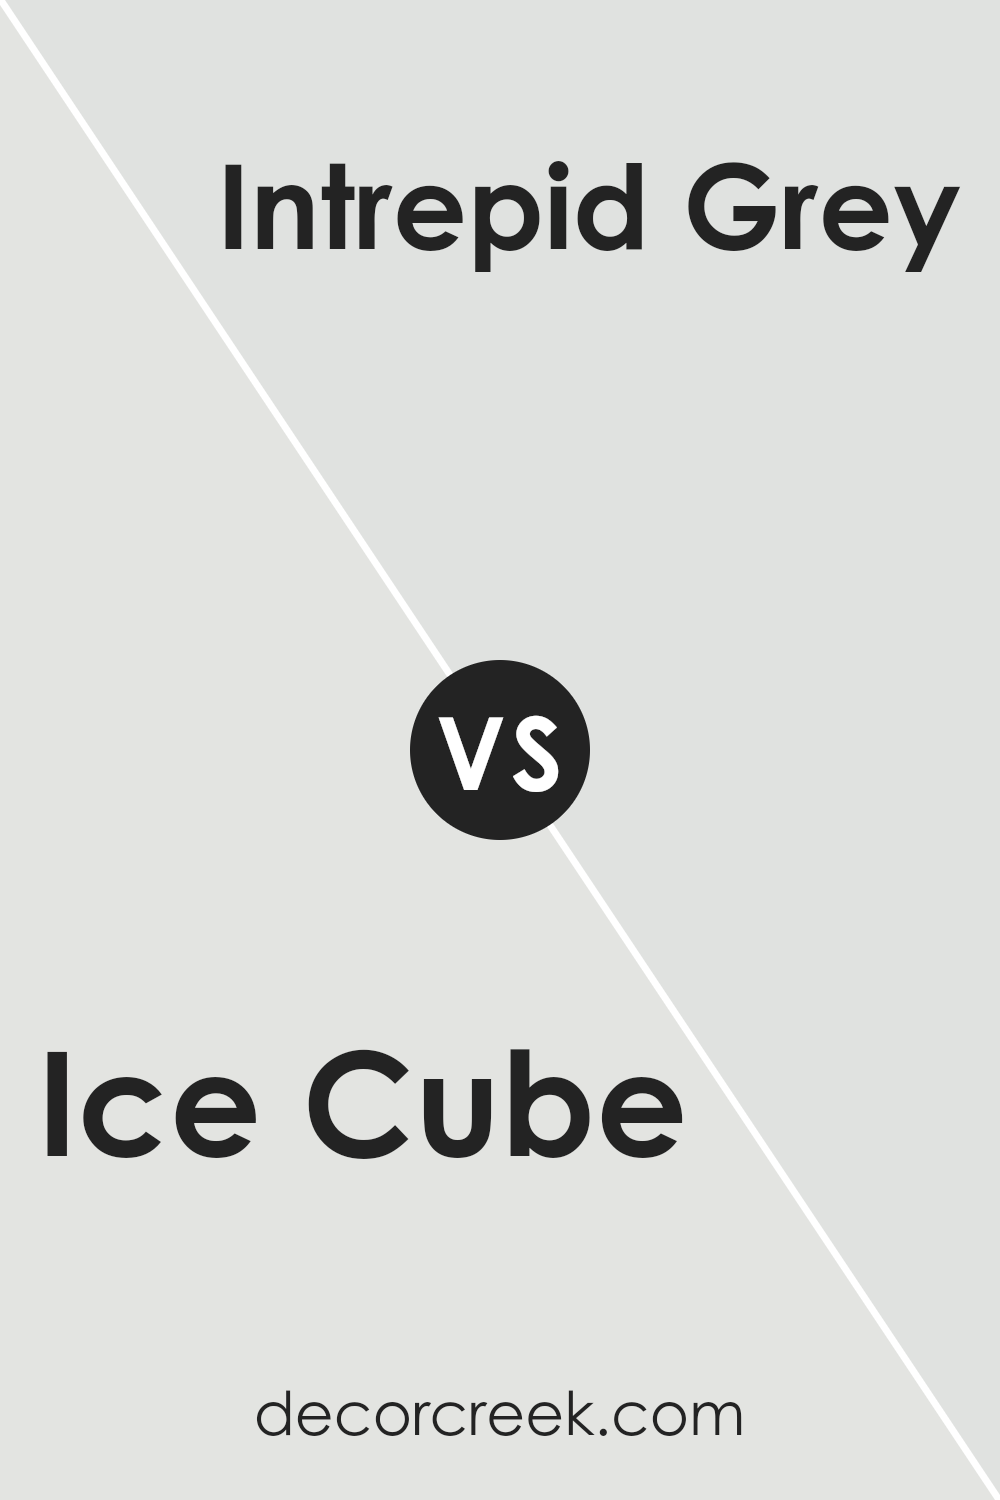 ice_cube_sw_6252_vs_intrepid_grey_sw_9556